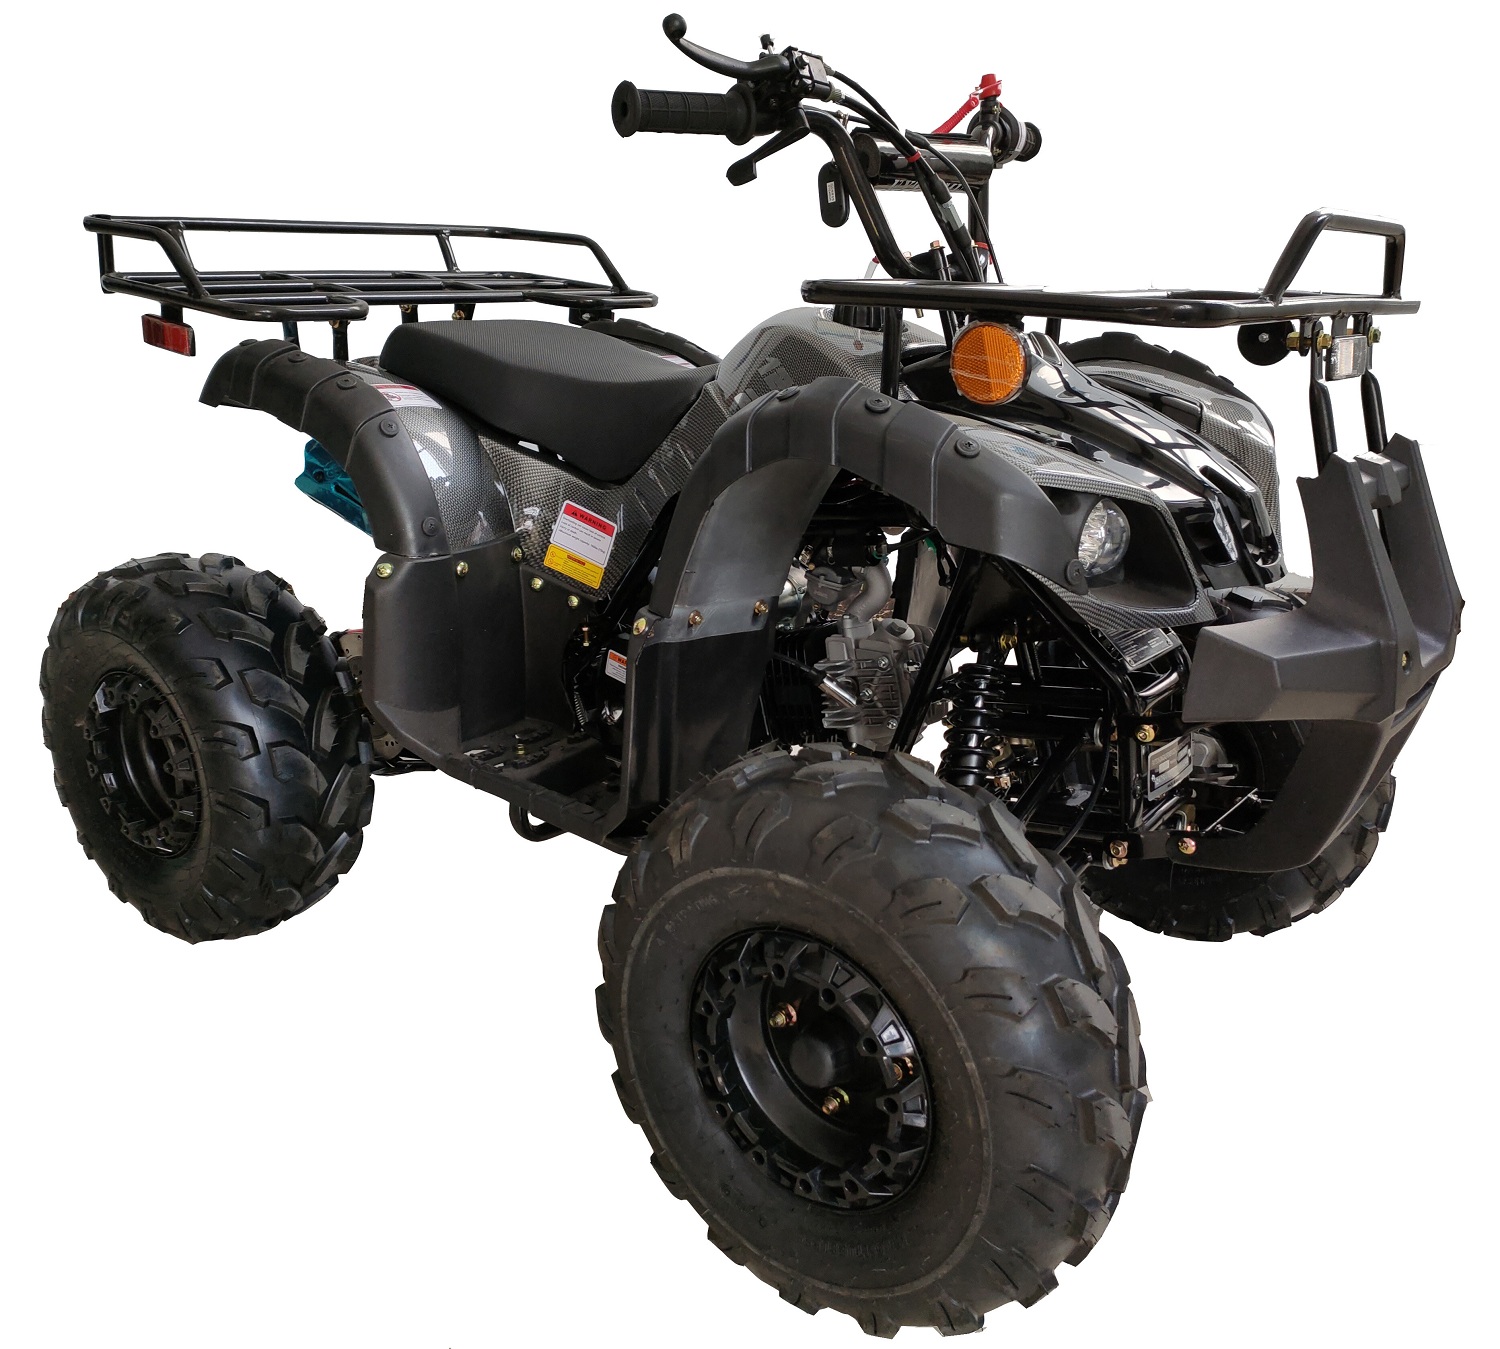 Vitacci New Rider-12 125Cc Atv, Automatic, 8" tire - Foot Shifter - Black